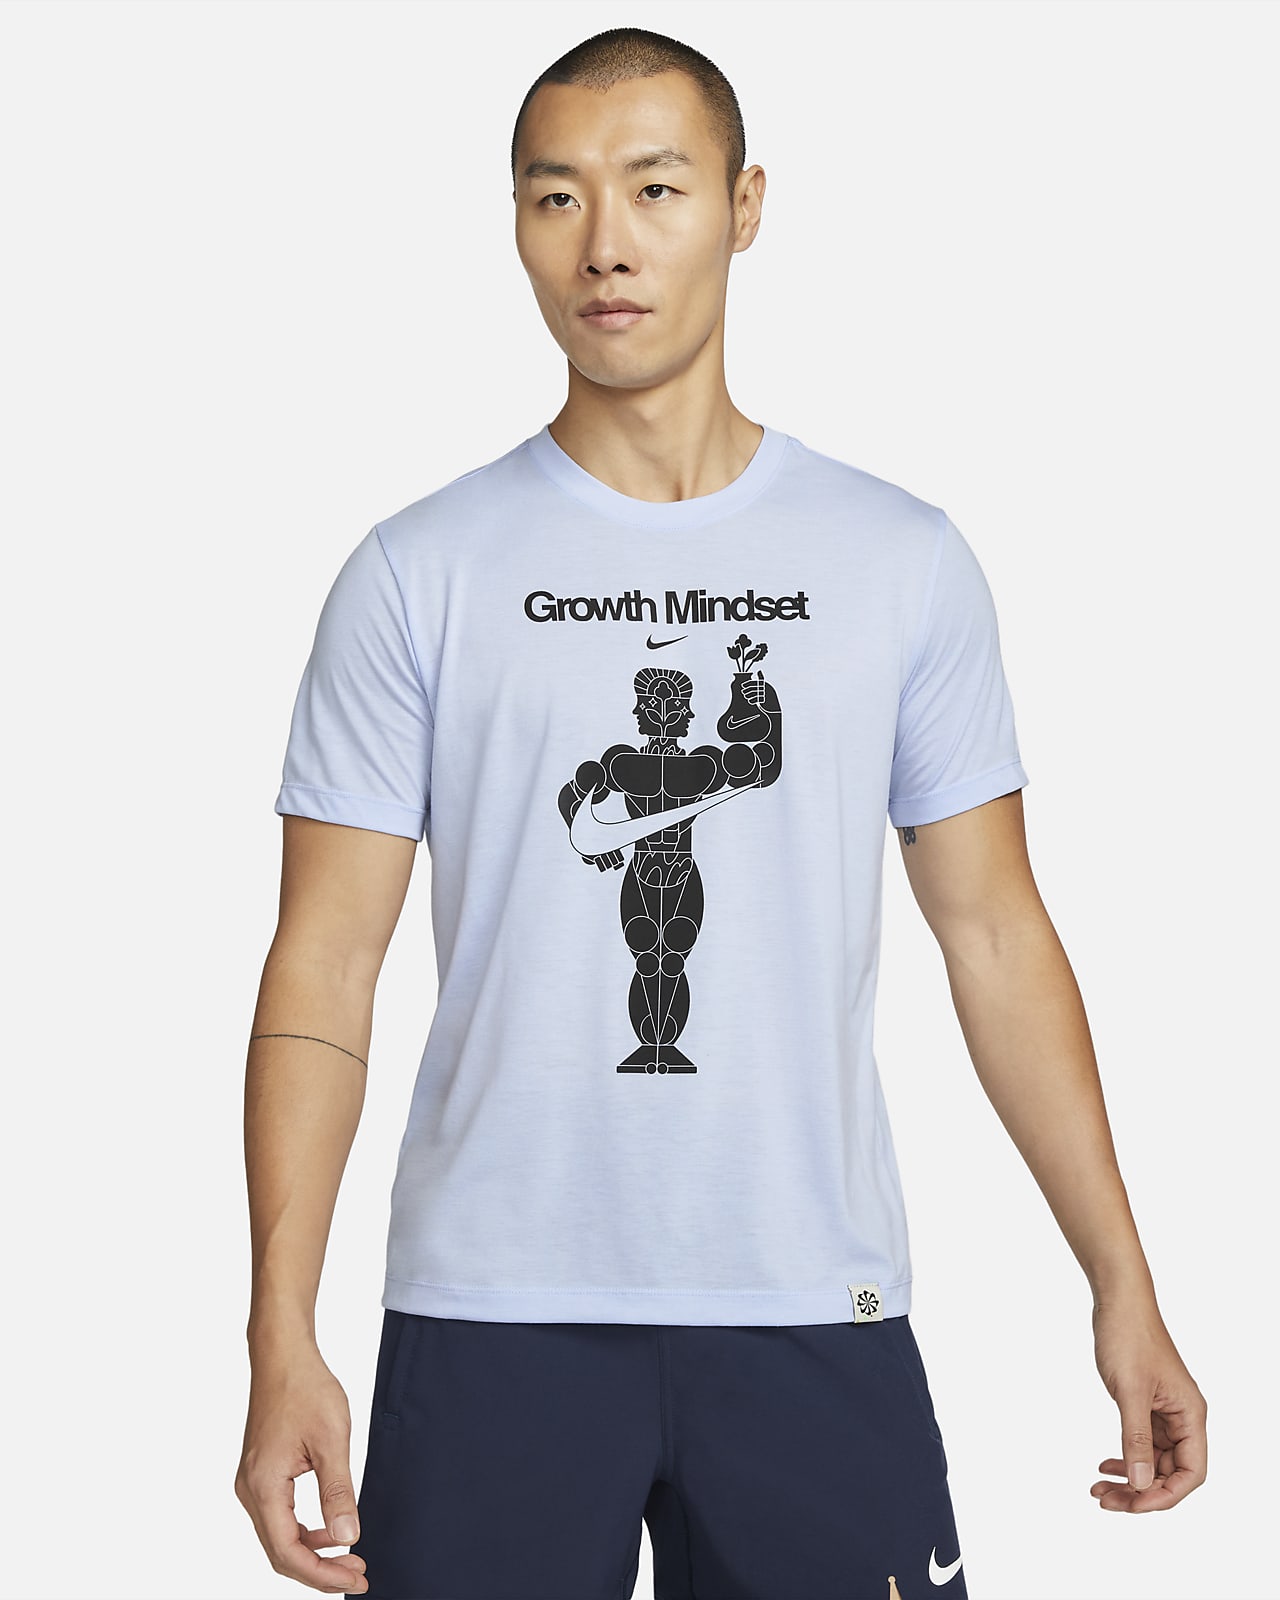 Nike Dri-FIT 男款圖樣訓練 T 恤